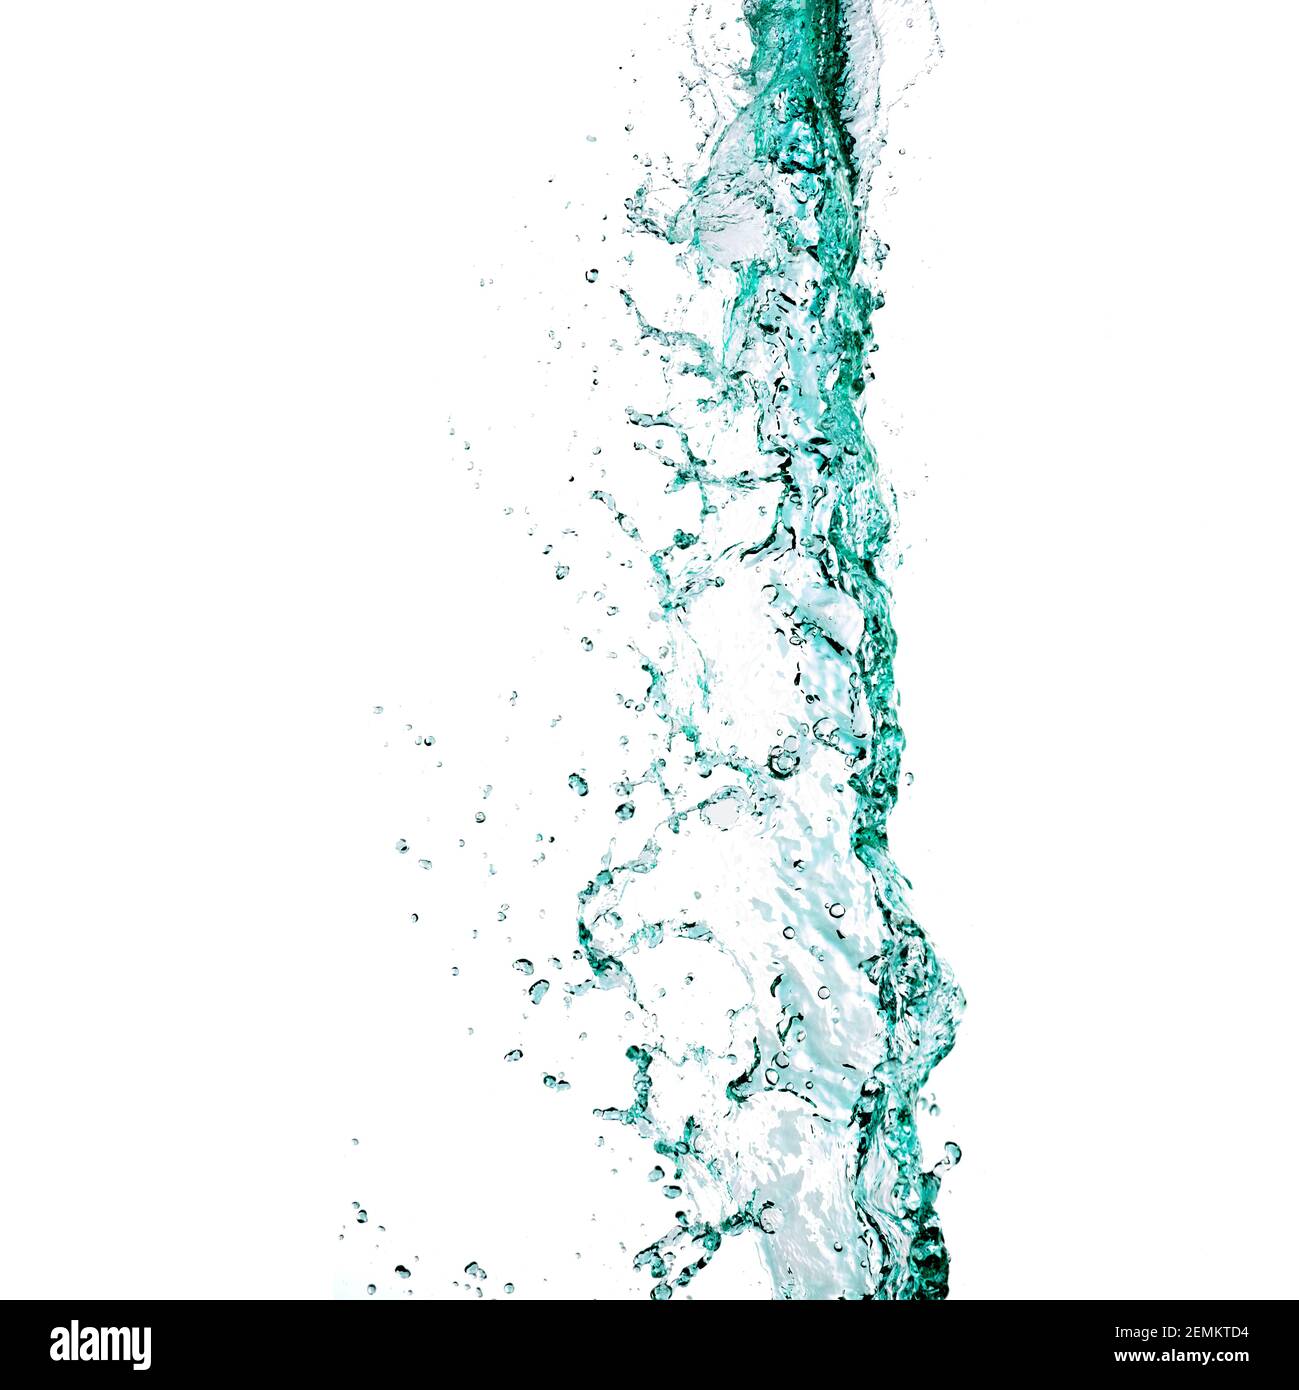 Acqua liquida turchese che scende dalla parte superiore della fotografia Foto Stock